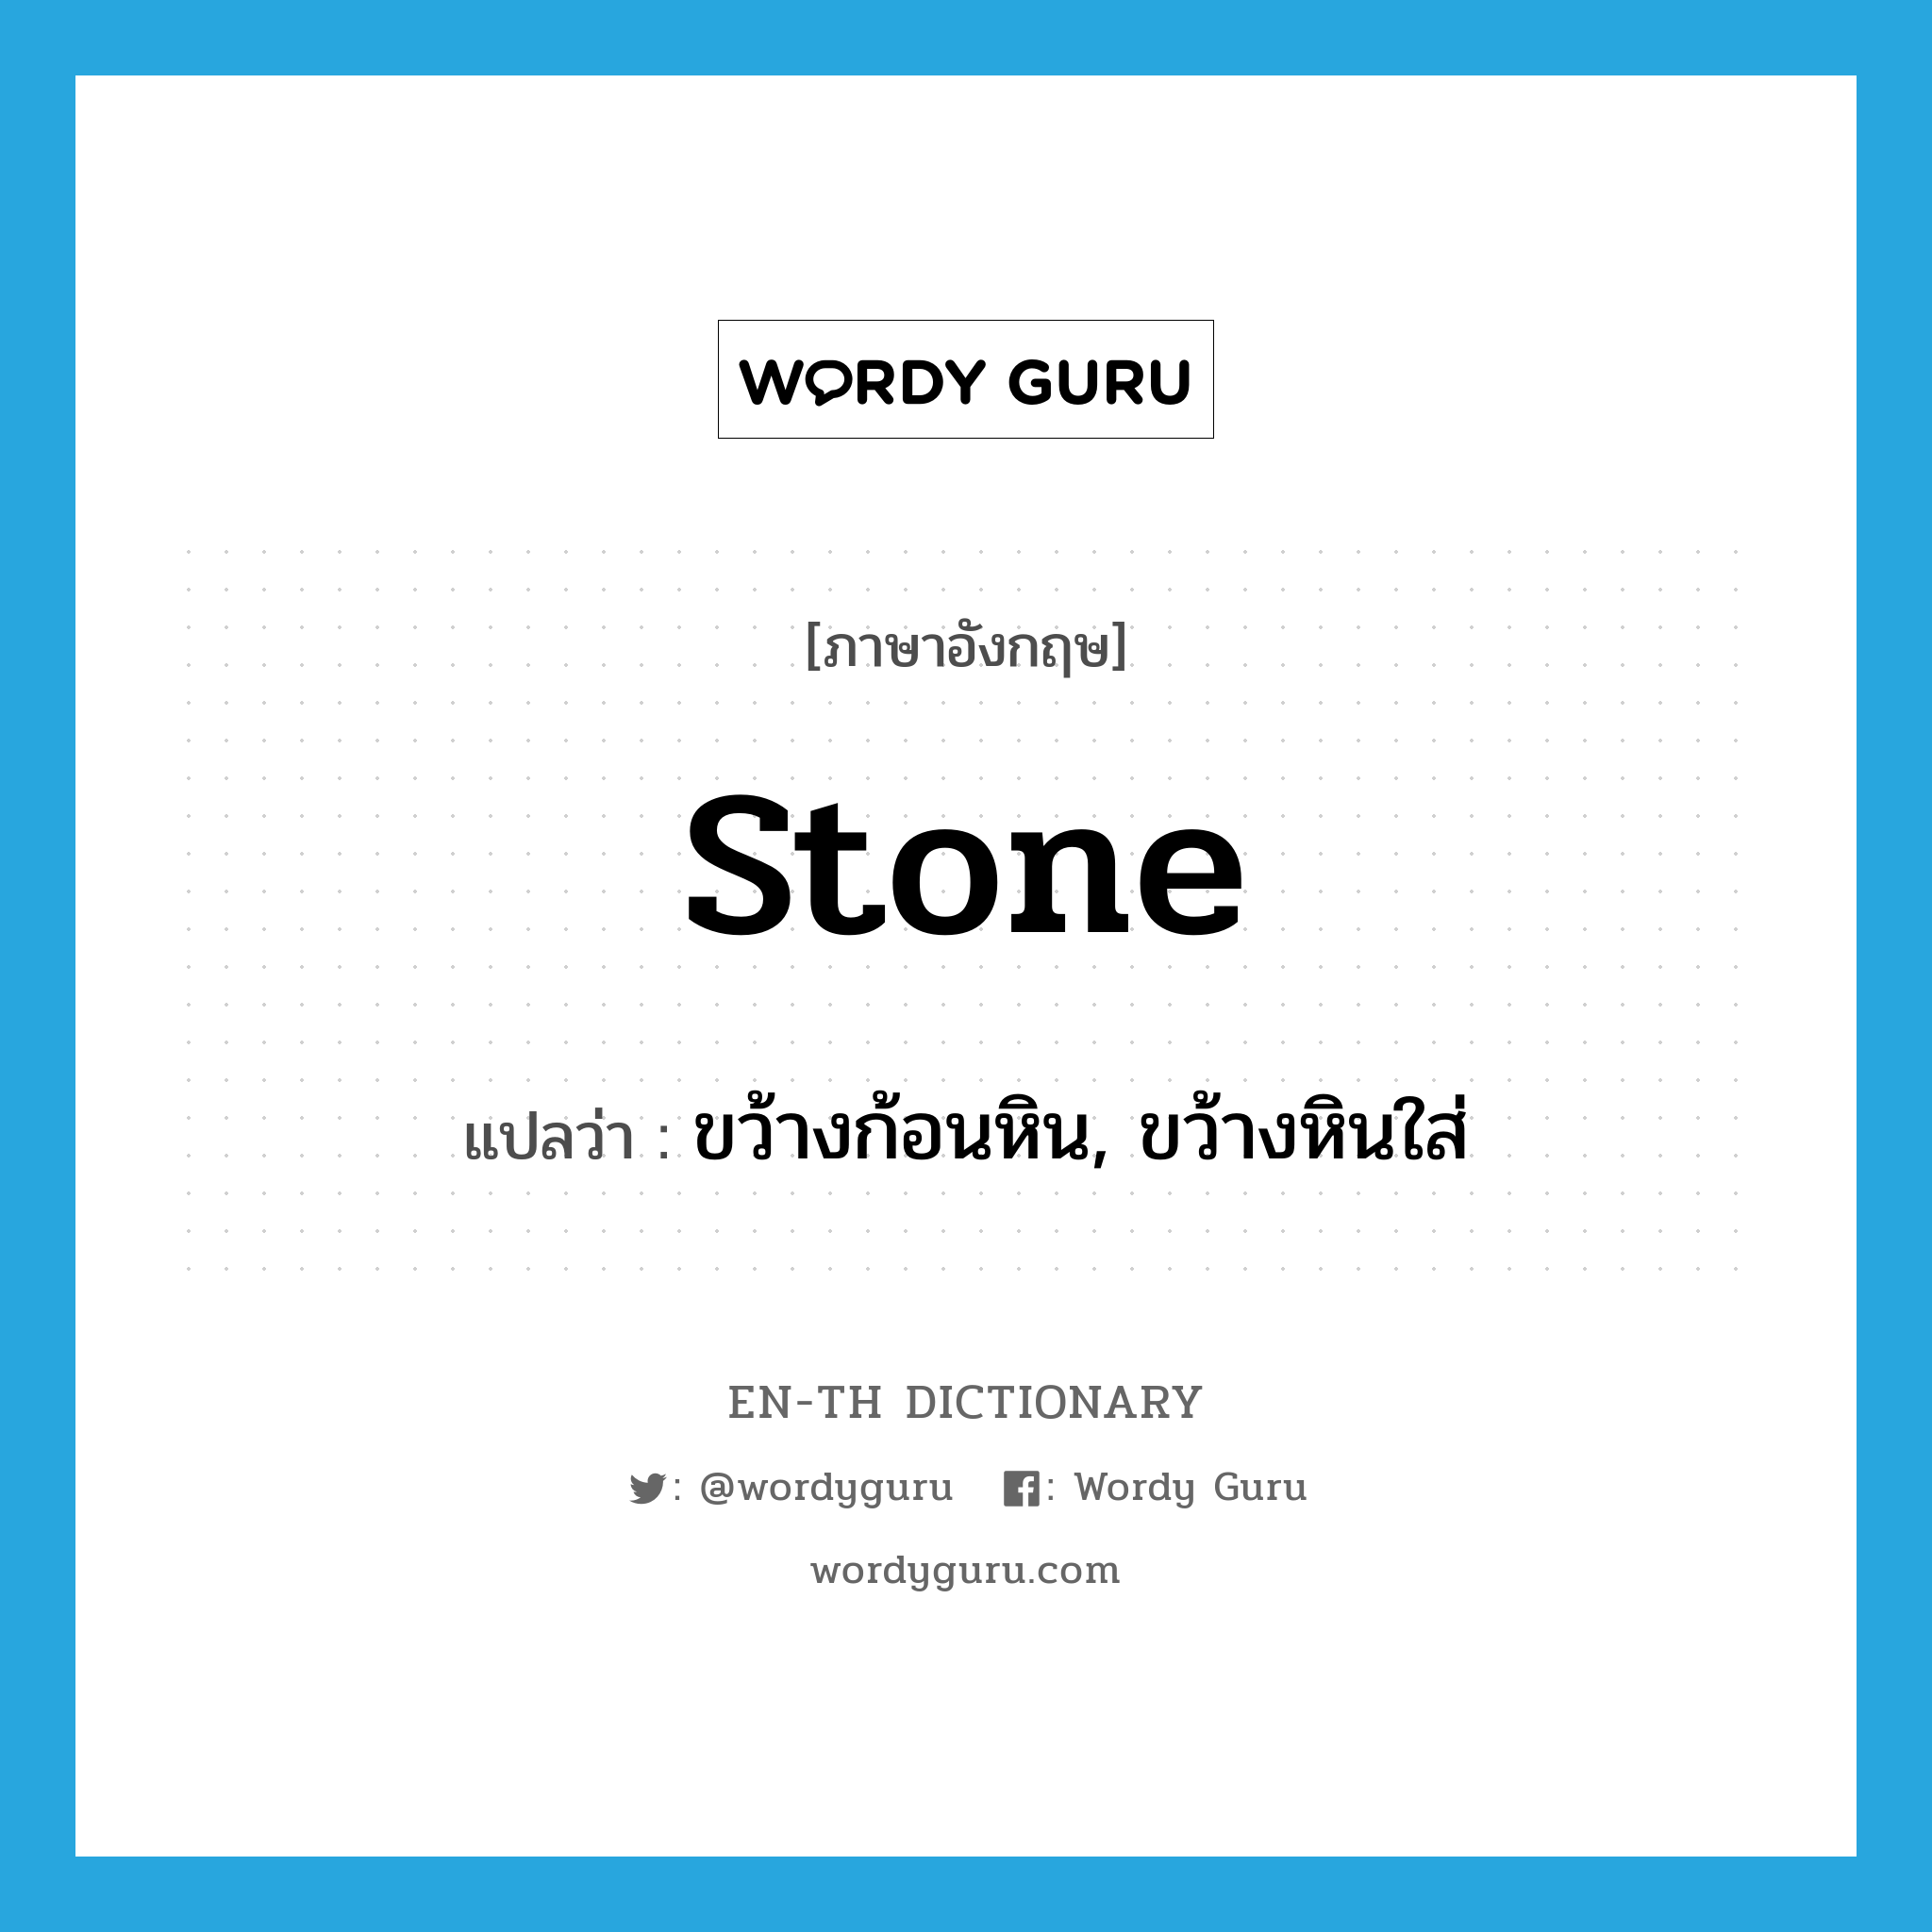 ขว้างก้อนหิน, ขว้างหินใส่ ภาษาอังกฤษ?, คำศัพท์ภาษาอังกฤษ ขว้างก้อนหิน, ขว้างหินใส่ แปลว่า stone ประเภท VT หมวด VT